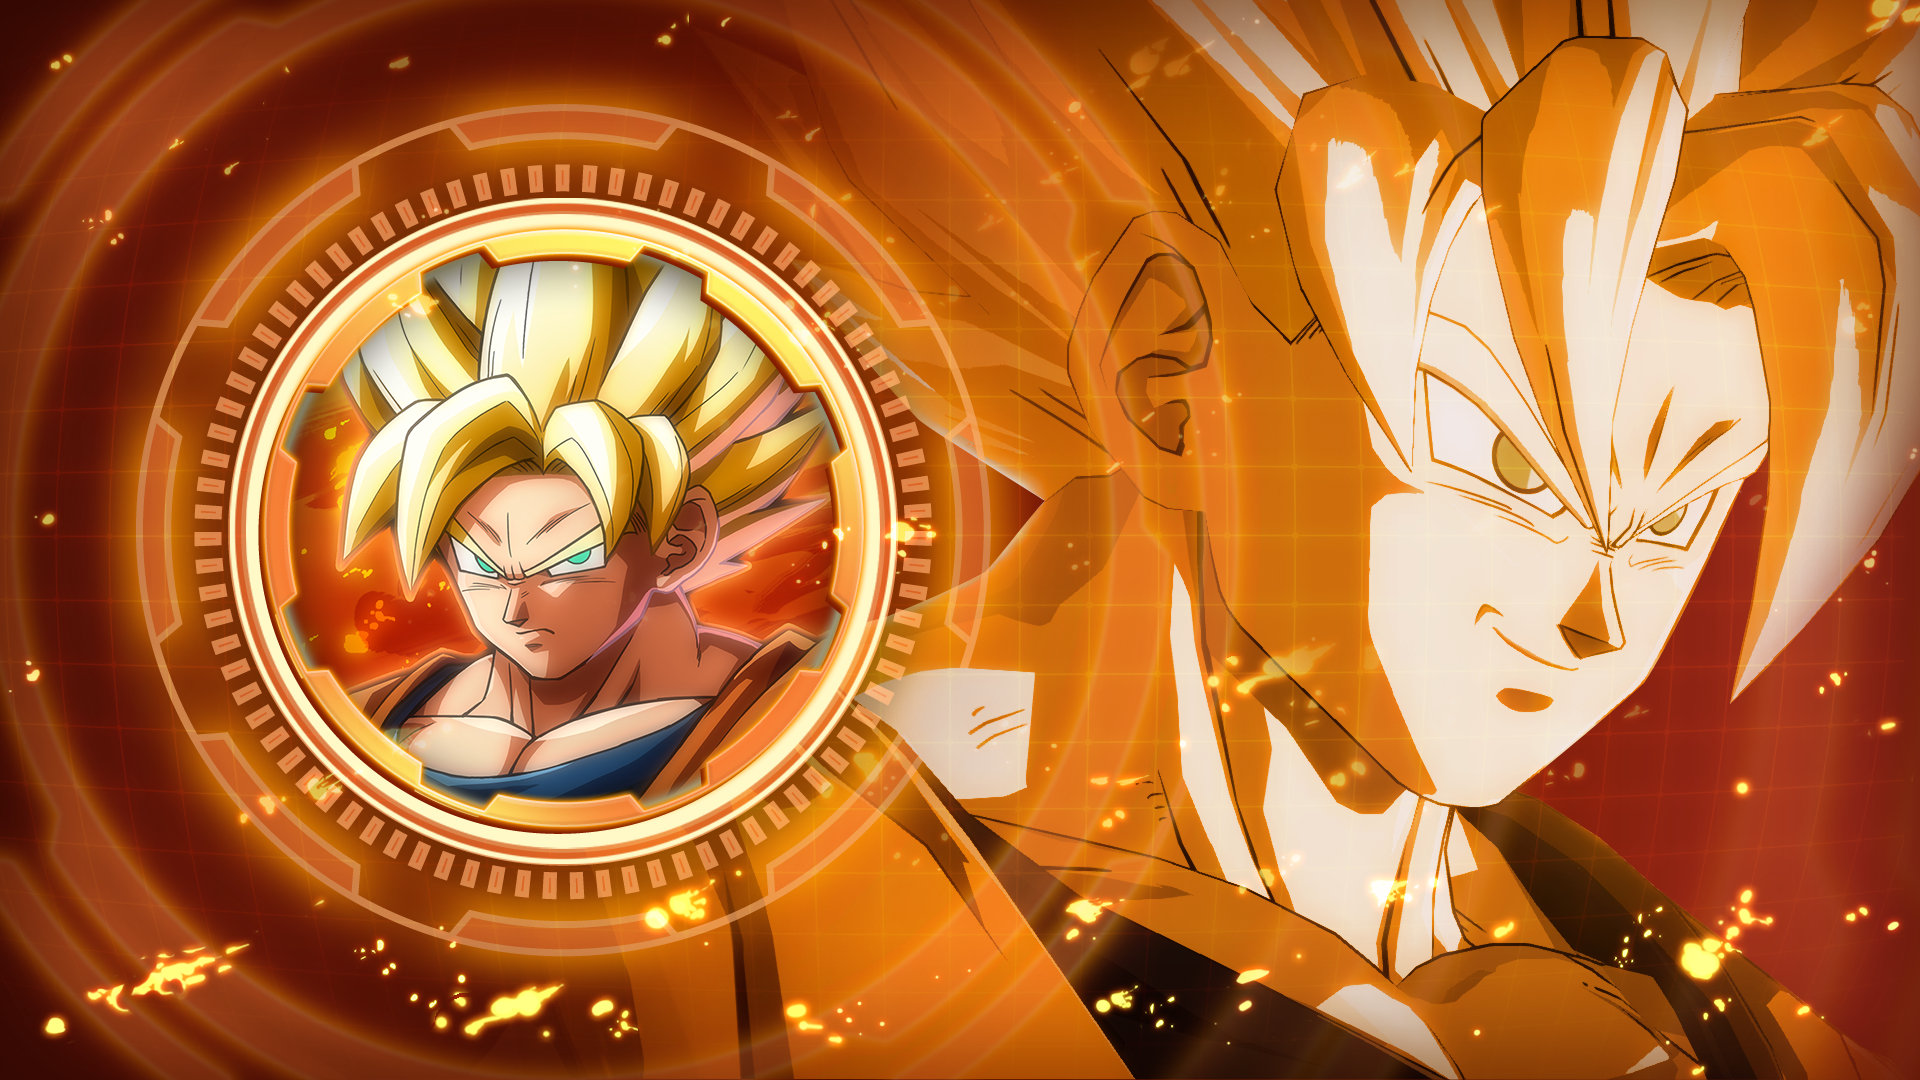 Icon for I am Goku, the Legendary Super Saiyan!